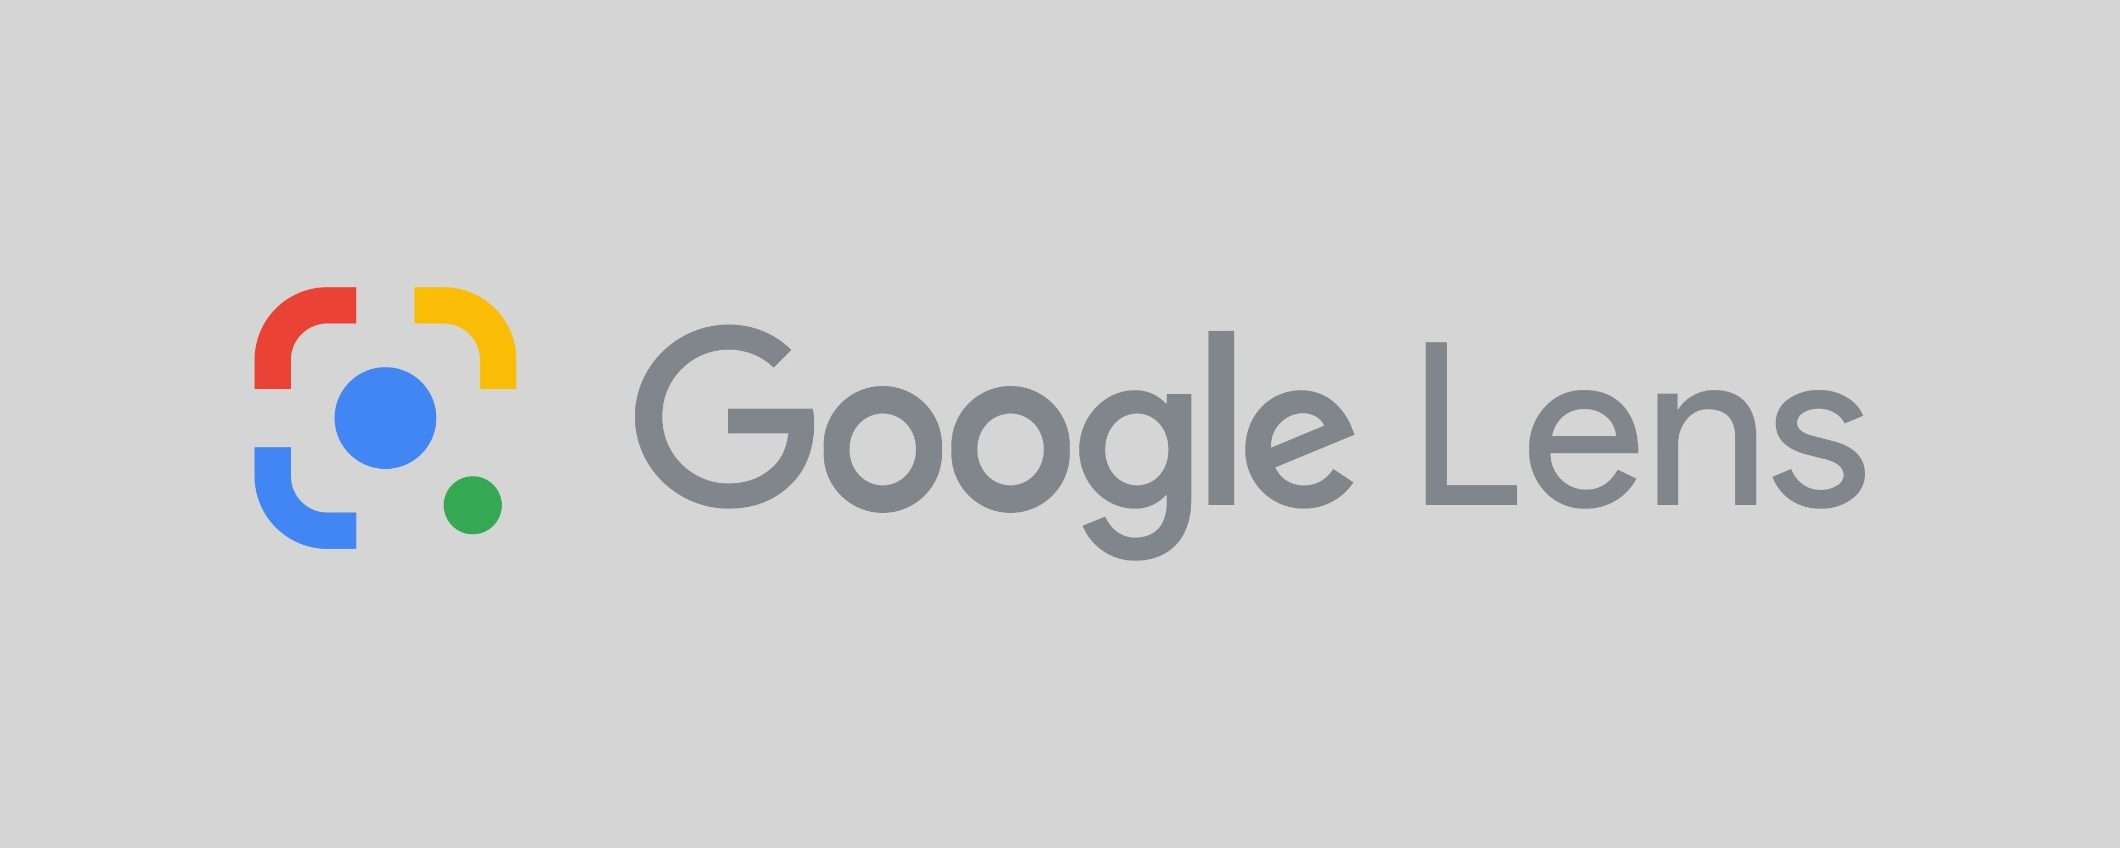 Google Lens su Chrome: riconosce, copia e traduce testi in foto